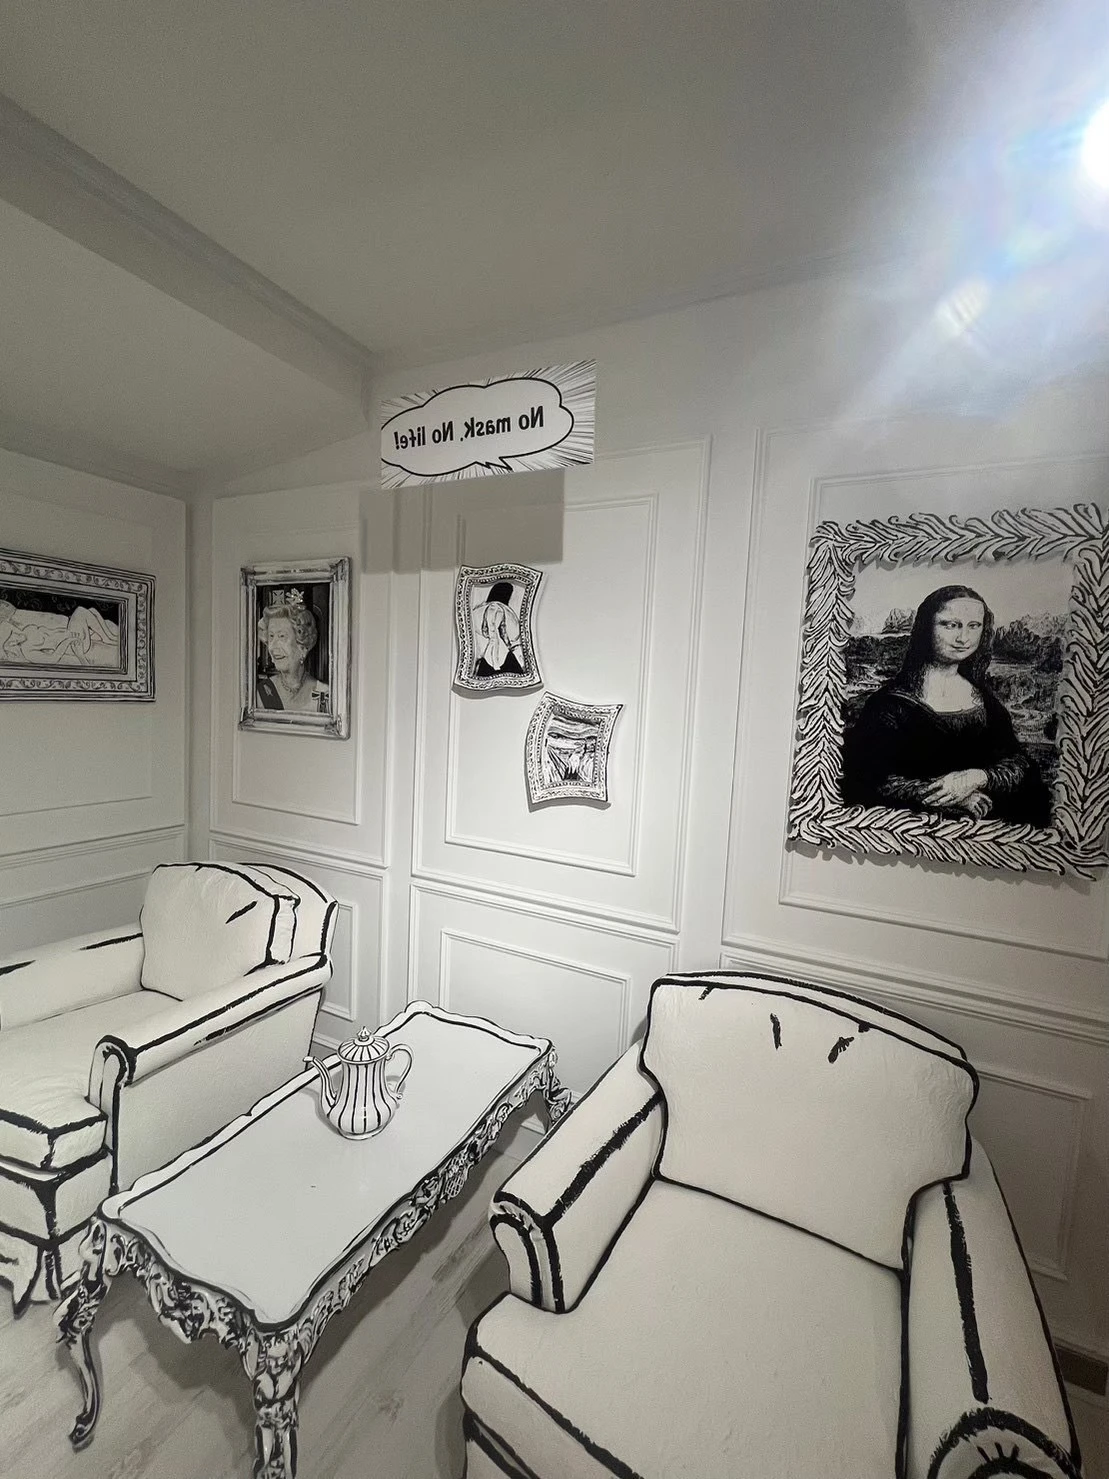 白黒の部屋の写真。ソファーや机があり、壁には絵が飾られている。